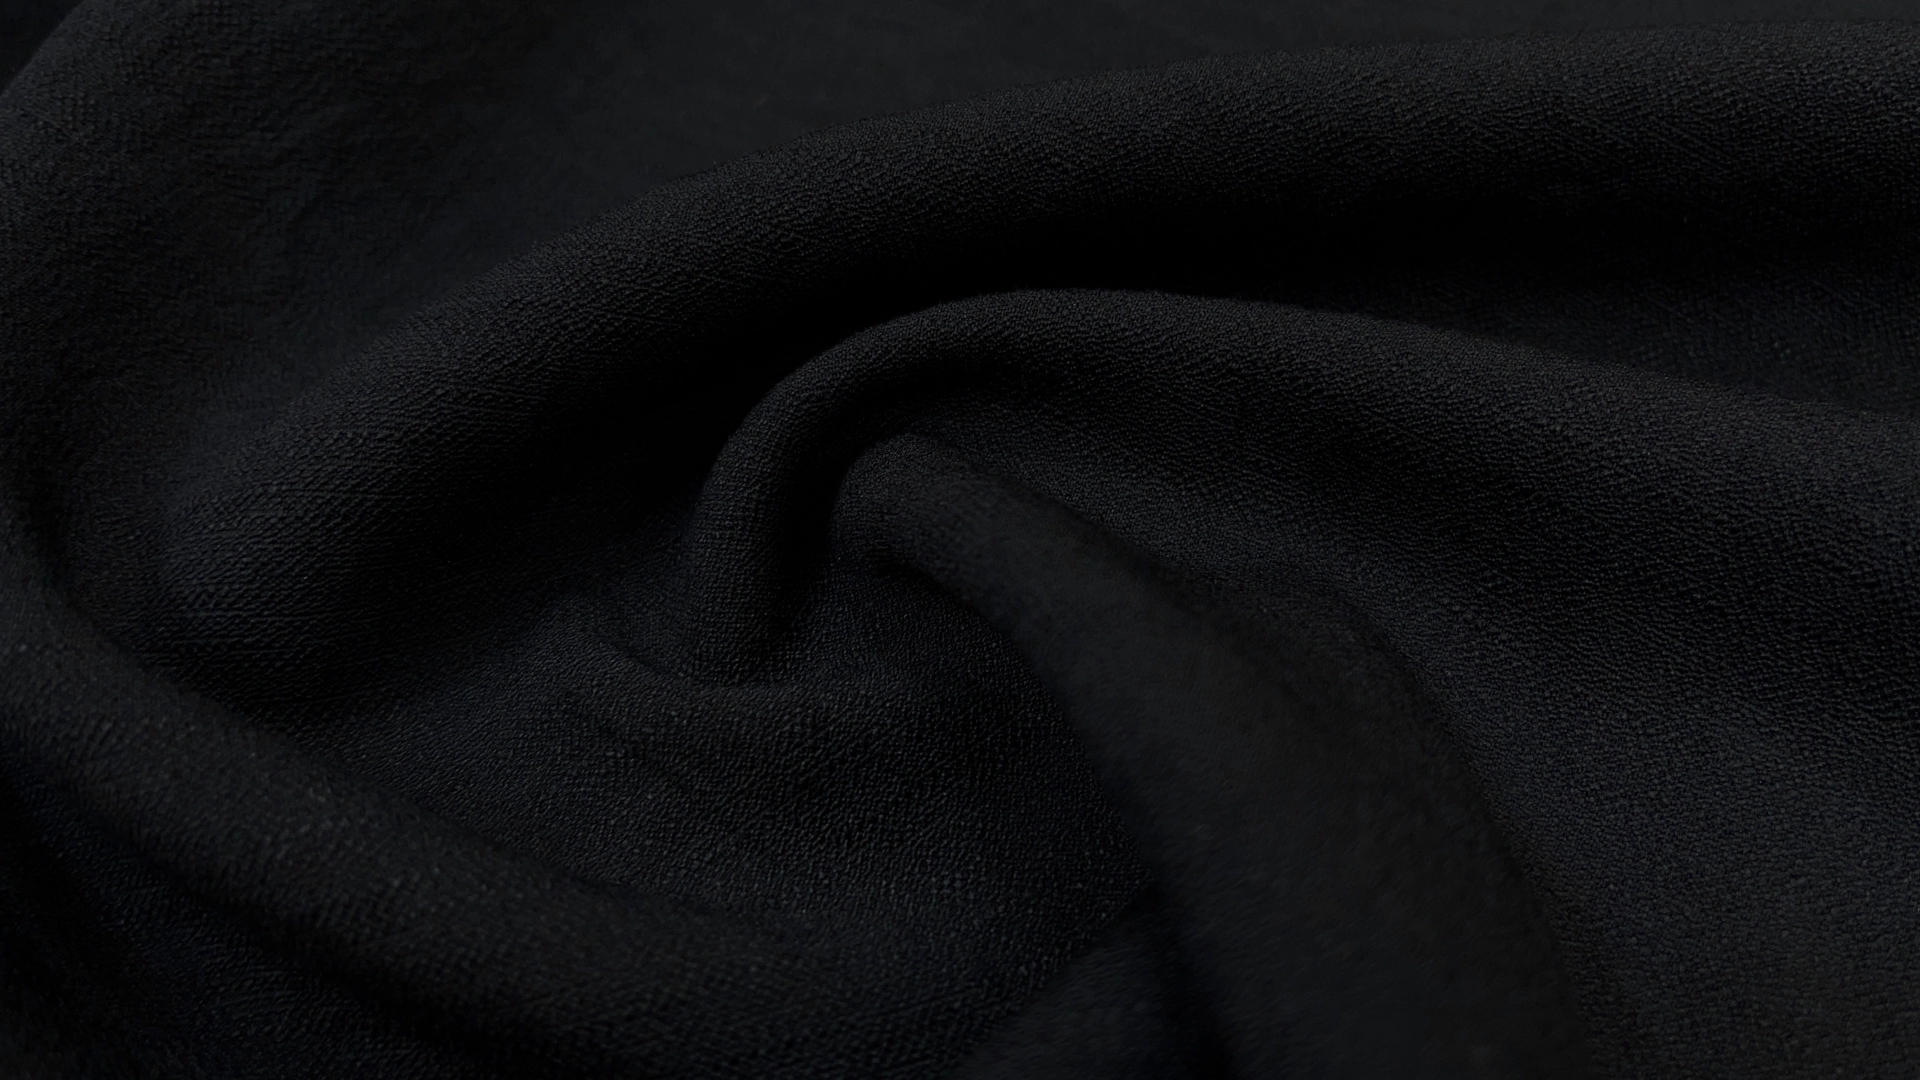 Плательный хлопок крэш черного цвета. Имеет жаккардовую выработку, устойчив к сминанию, совершенно не светится. Подойдет для пошива летнего платья, широких брюк, рубашки, свободных шорт с топом.